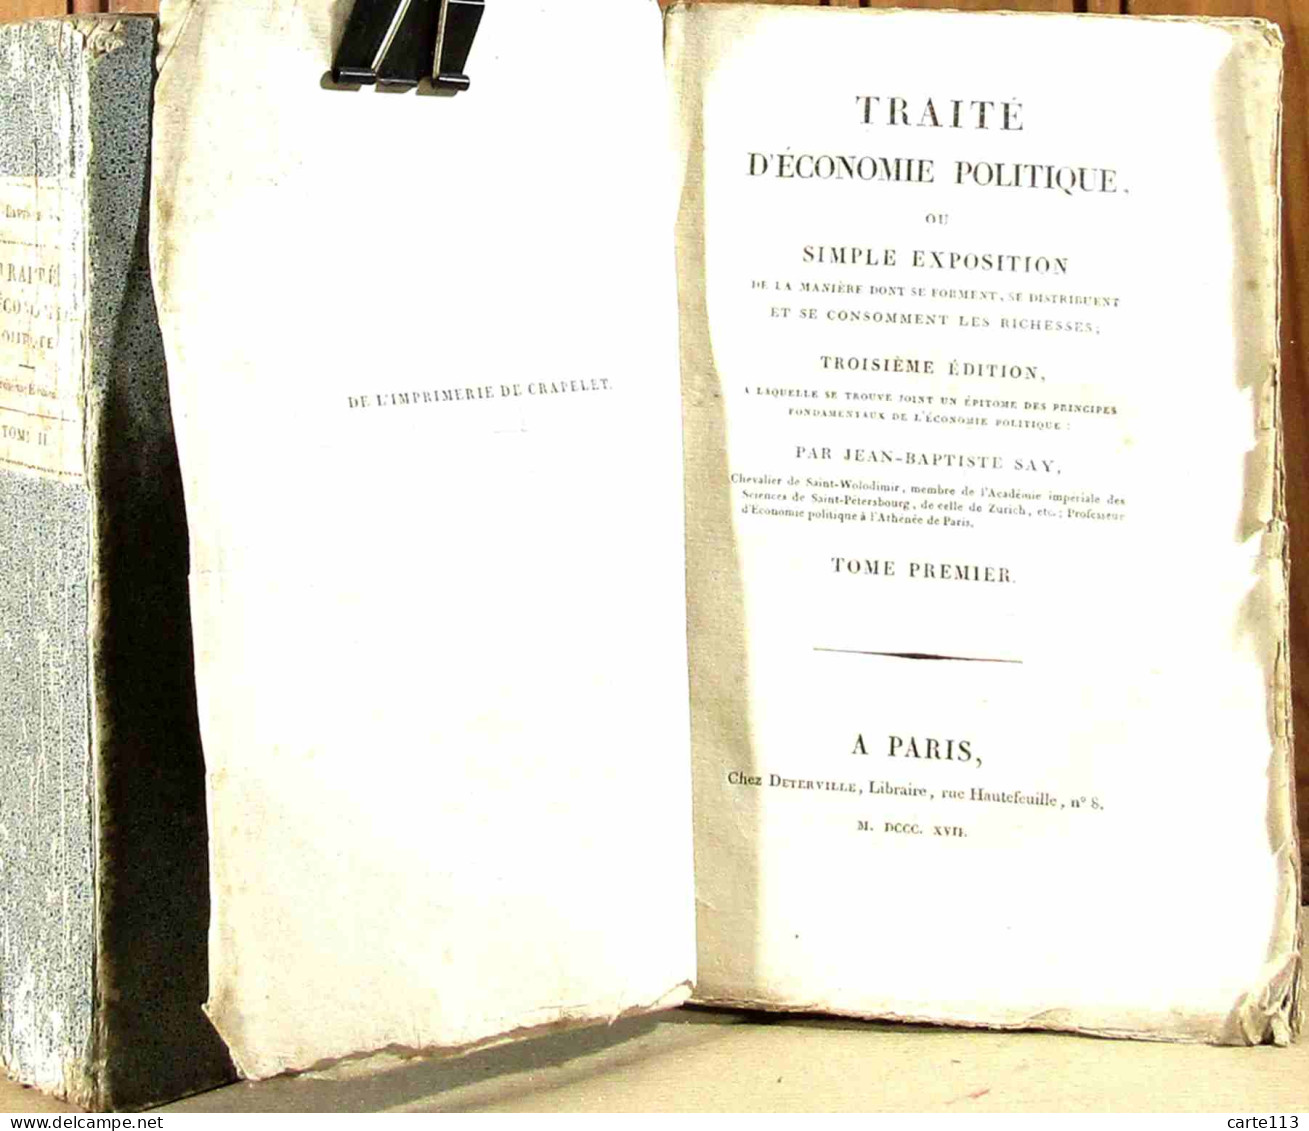 SAY Jean-Baptiste - TRAITE D'ECONOMIE POLITIQUE OU SIMPLE EXPOSITION DE LA MANIERE DONT S - 1801-1900